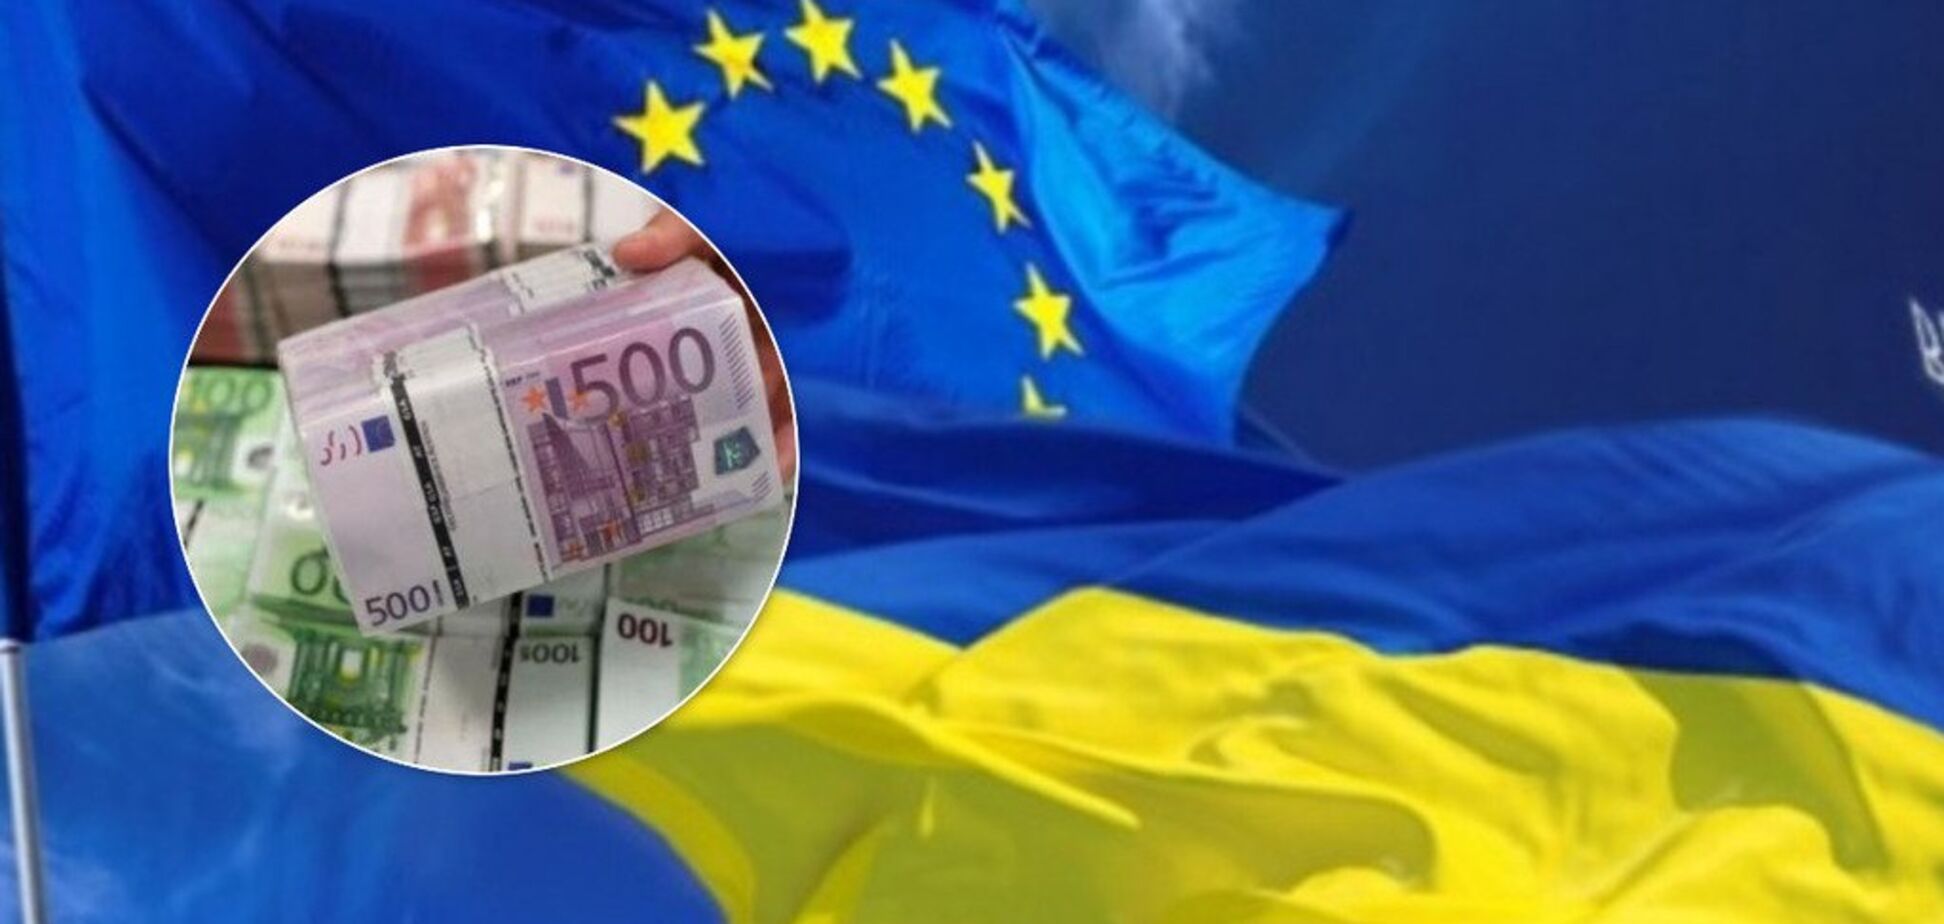 ЕС вложит деньги в украинское образование: на что они пойдут